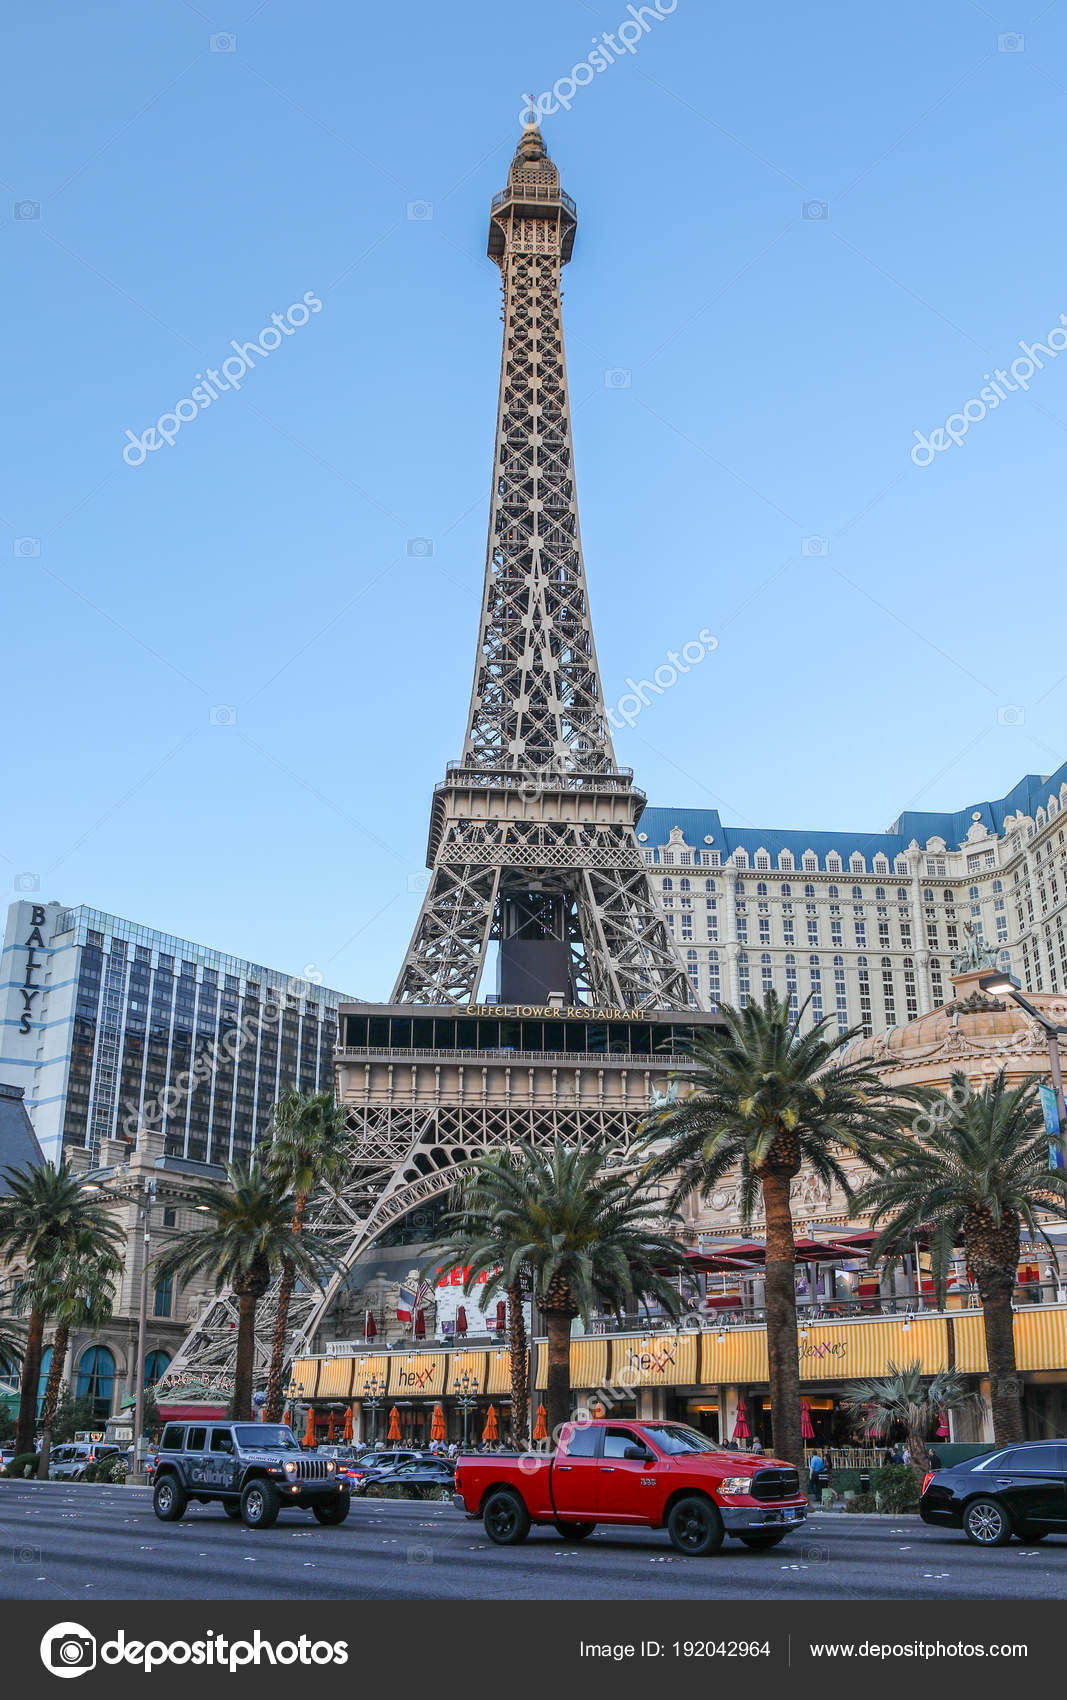 Eiffel Tower, Las Vegas, NV, USA